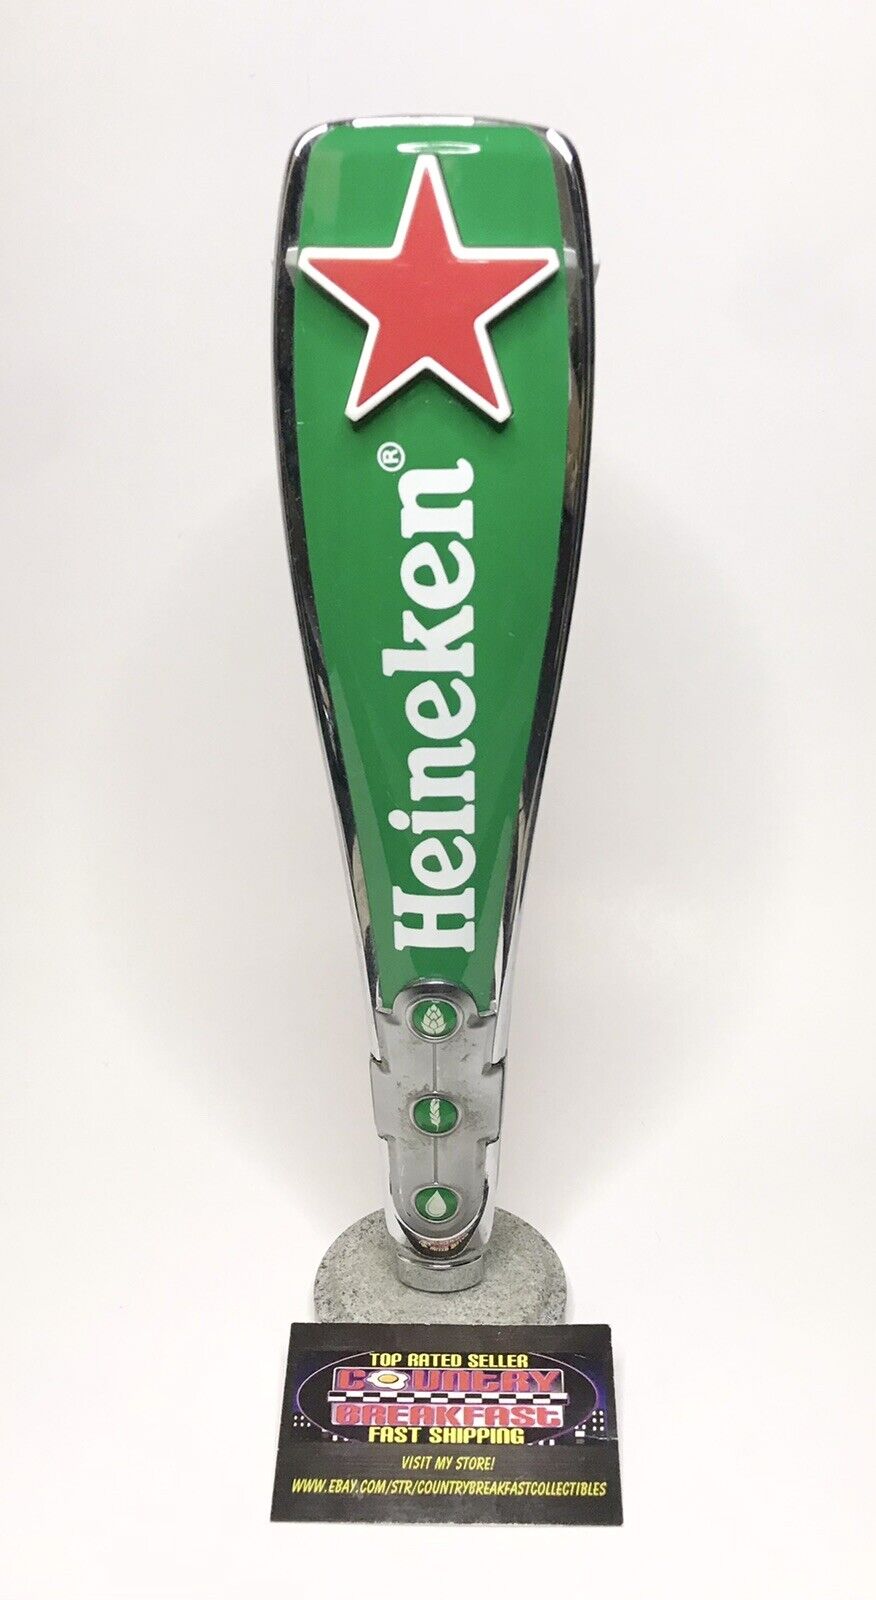 Heineken Red Star Three Sided Logo Beer Tap Handle 11.75” Tall - Nice